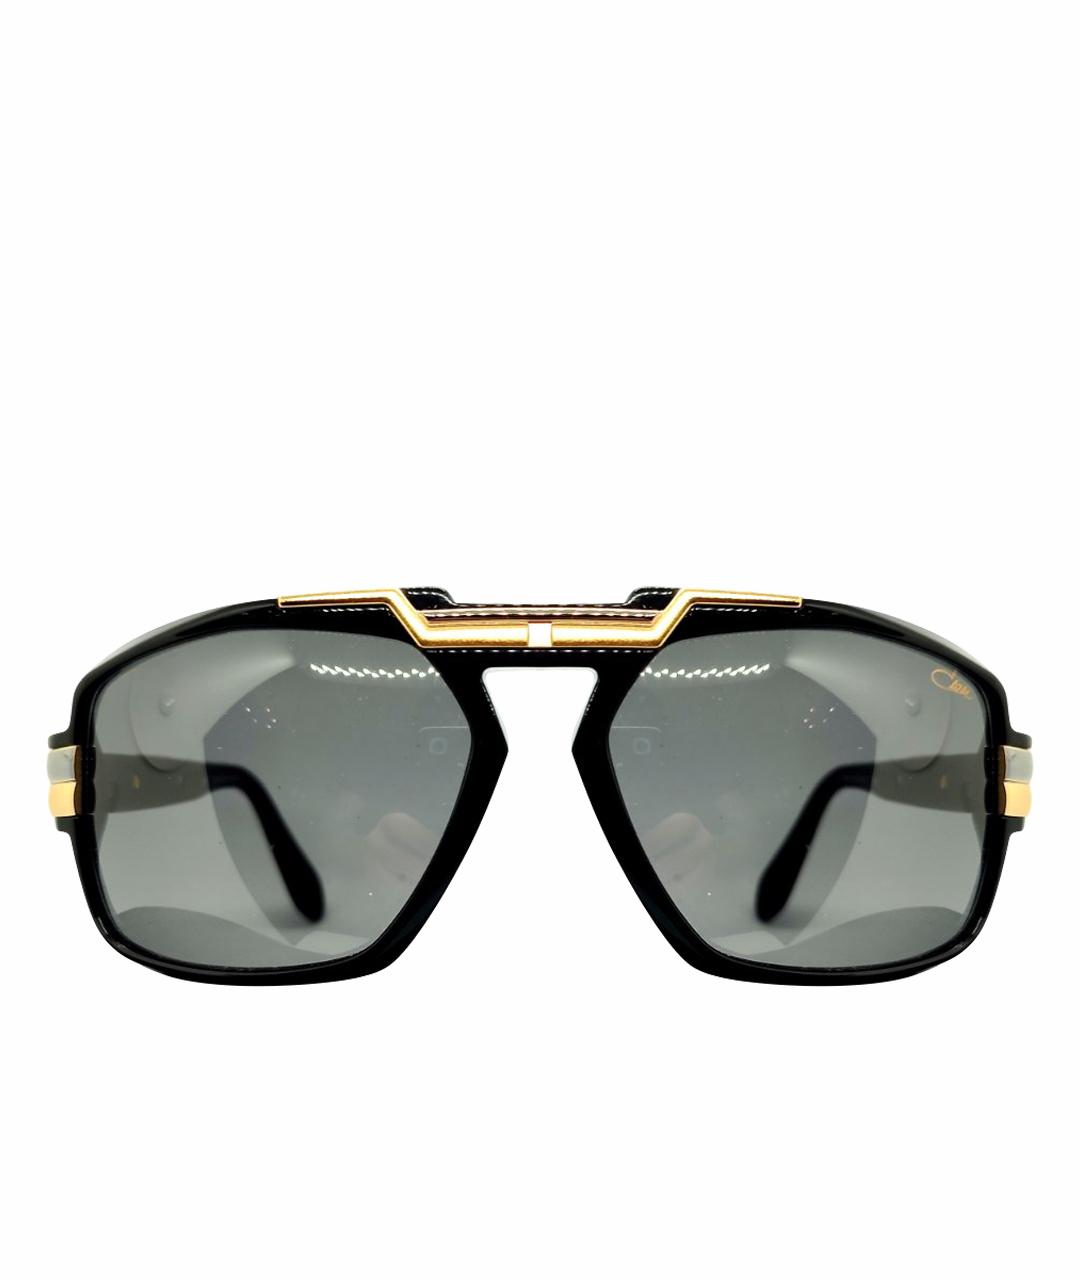 CAZAL Черные пластиковые солнцезащитные очки, фото 1